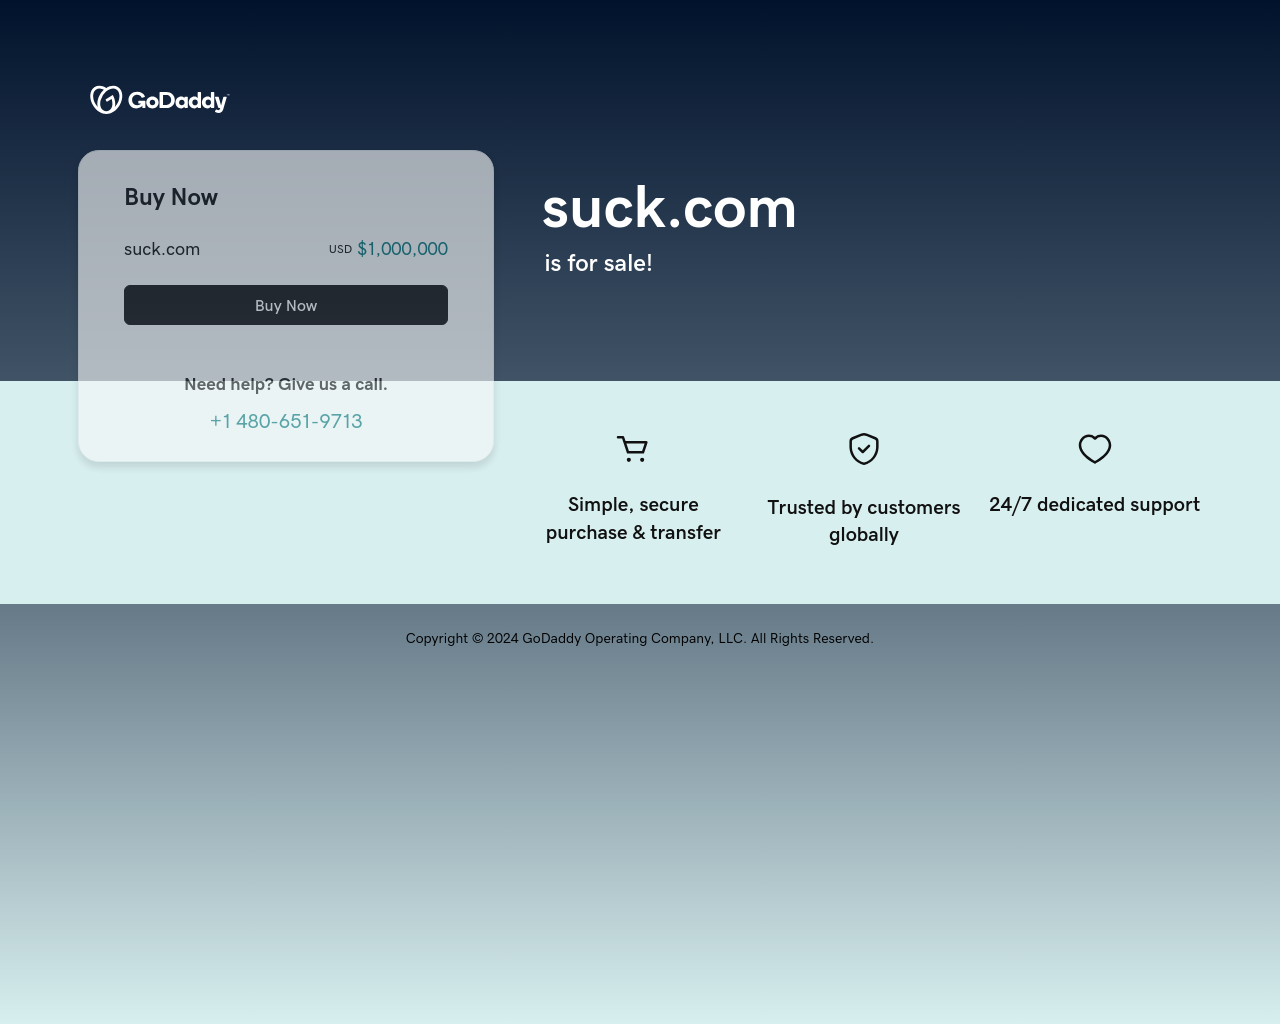 suck.com